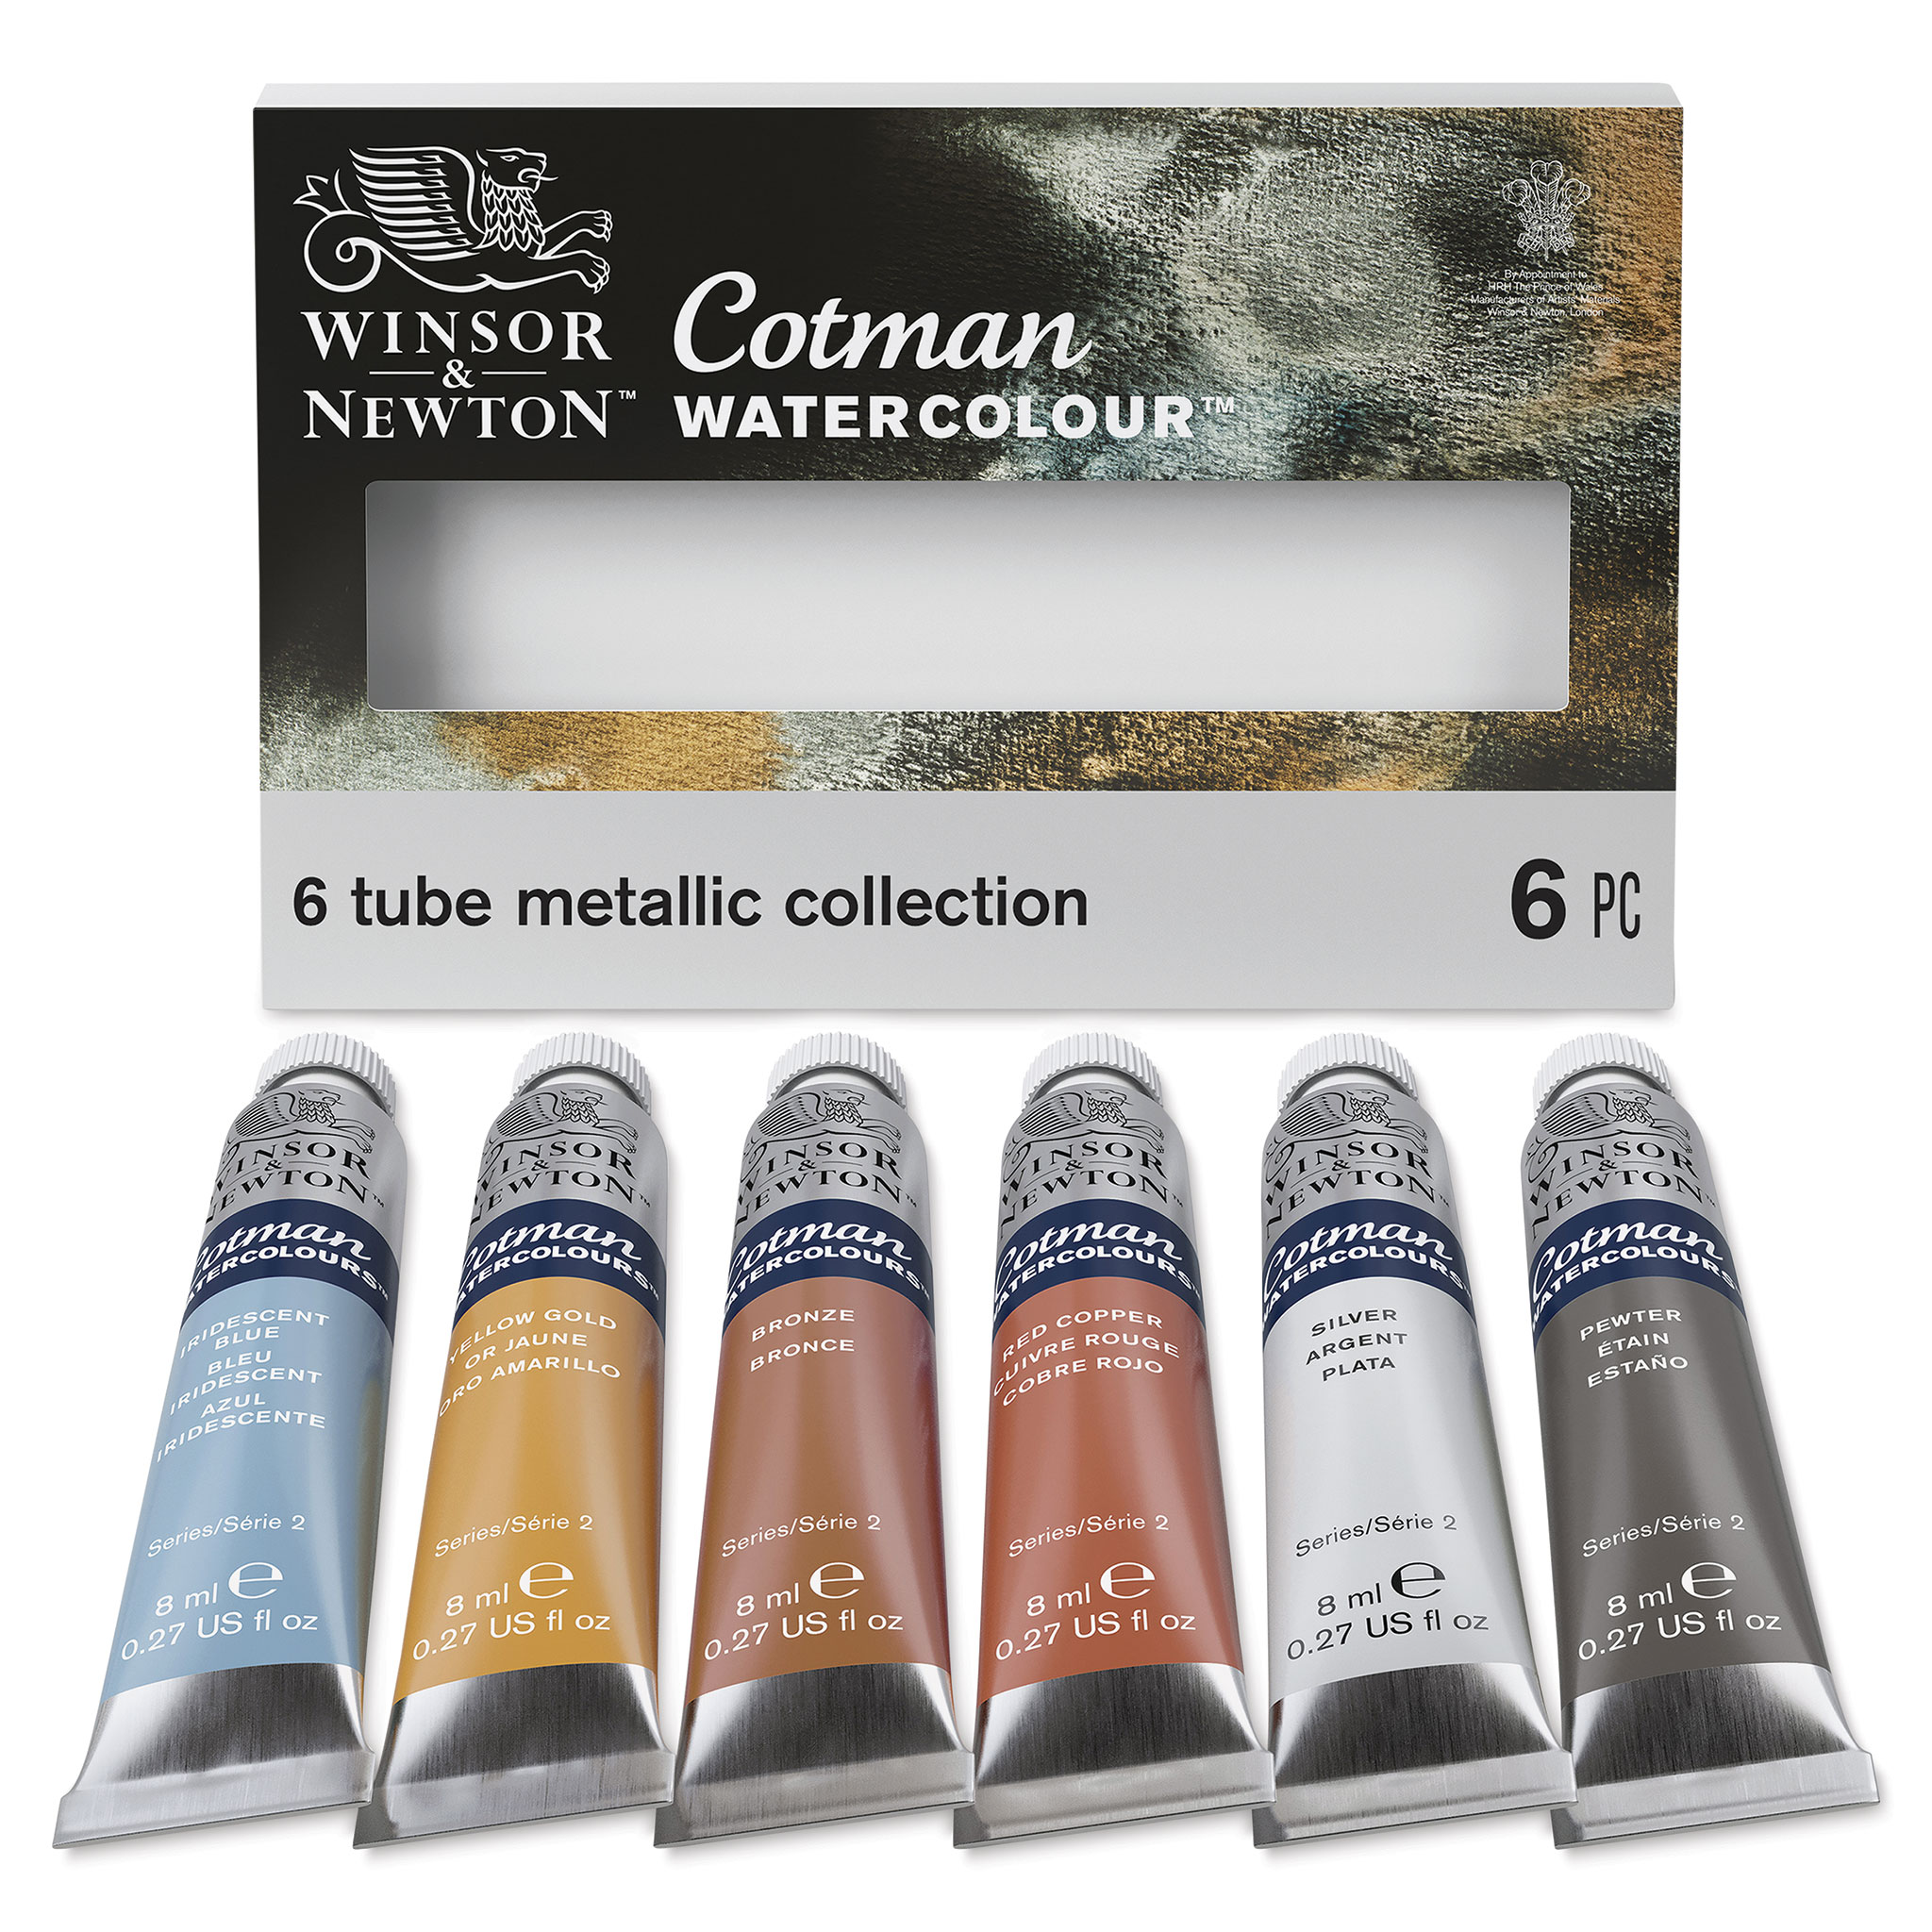 Winsor & Newton Cotman Watercolor Paint Set, 12 Colors, 8ml (0.27-oz)  Tubes, Blue,Ivory,White